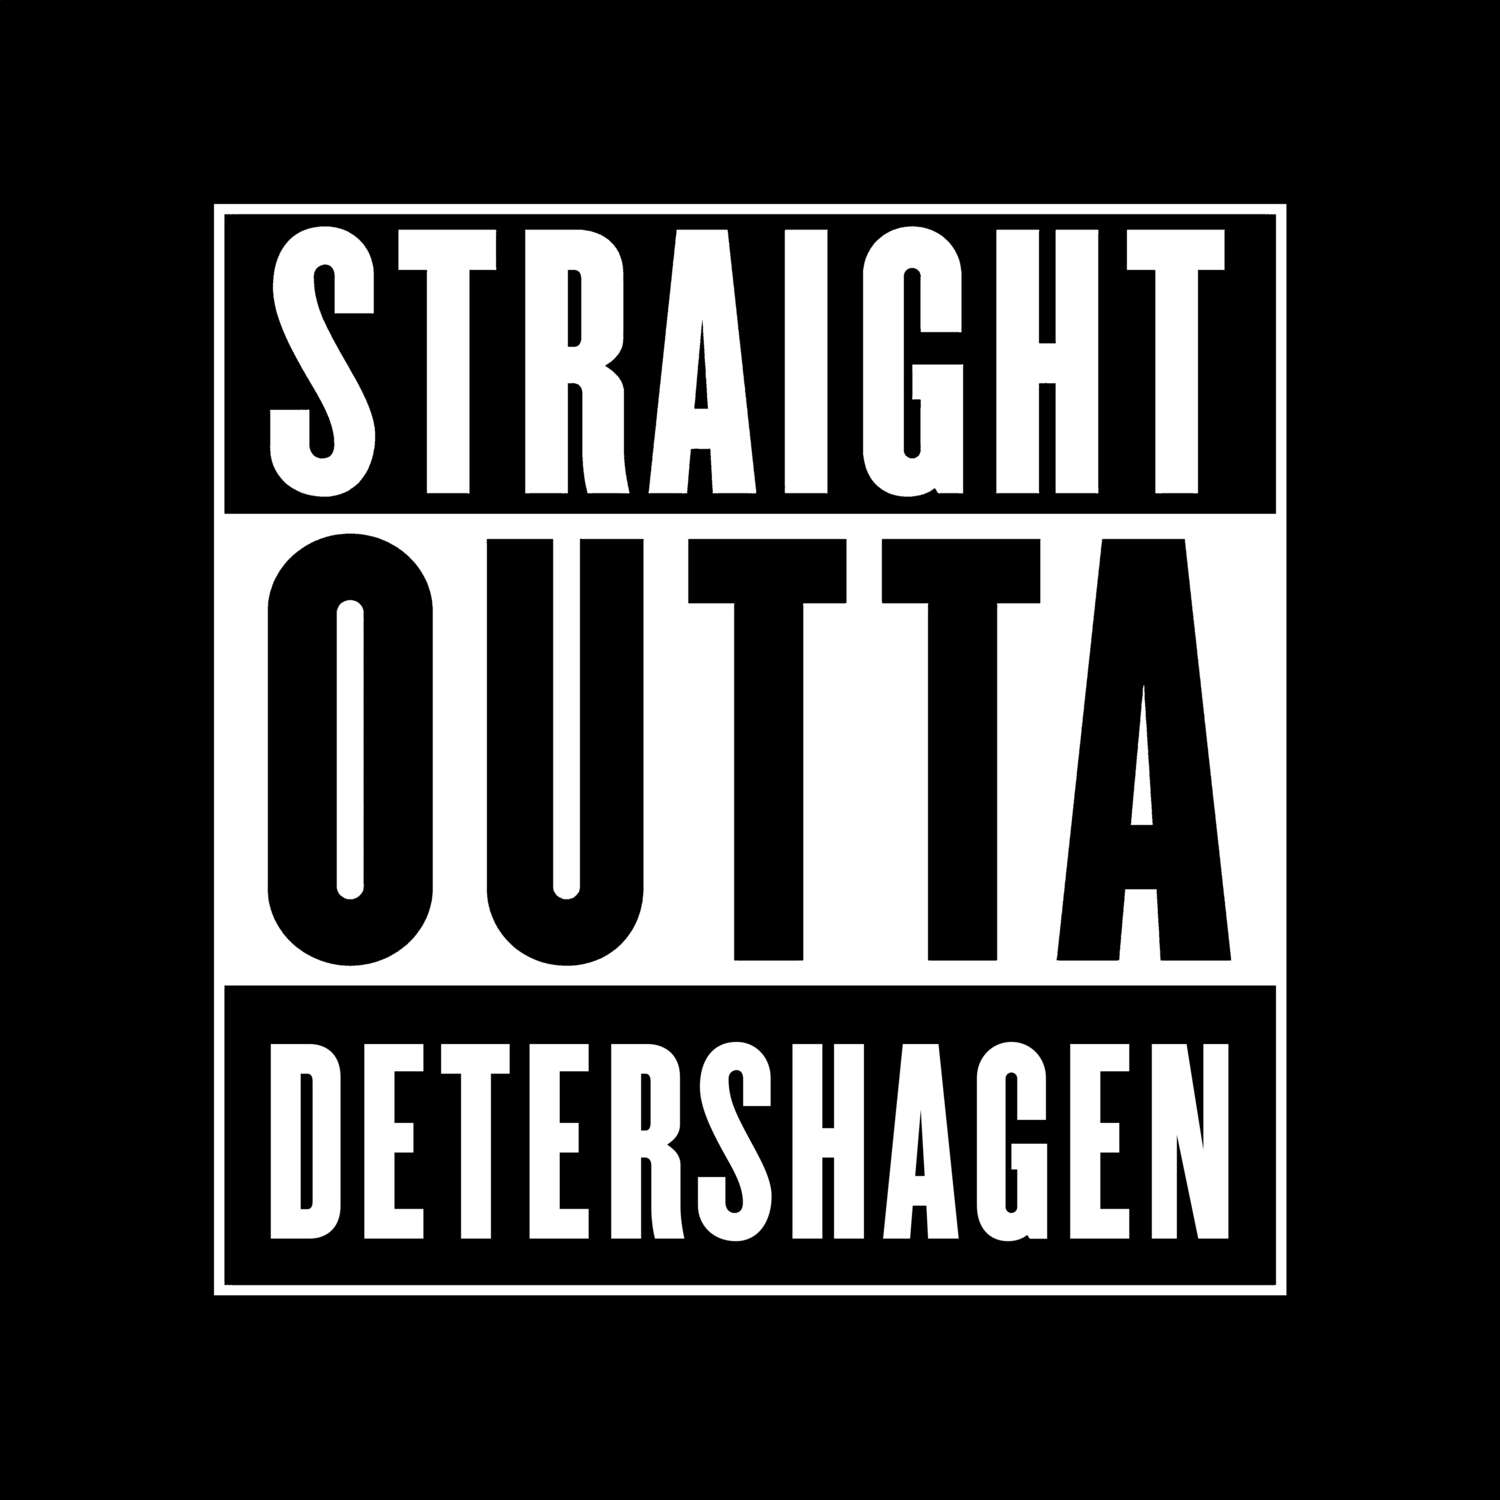 Detershagen T-Shirt »Straight Outta«